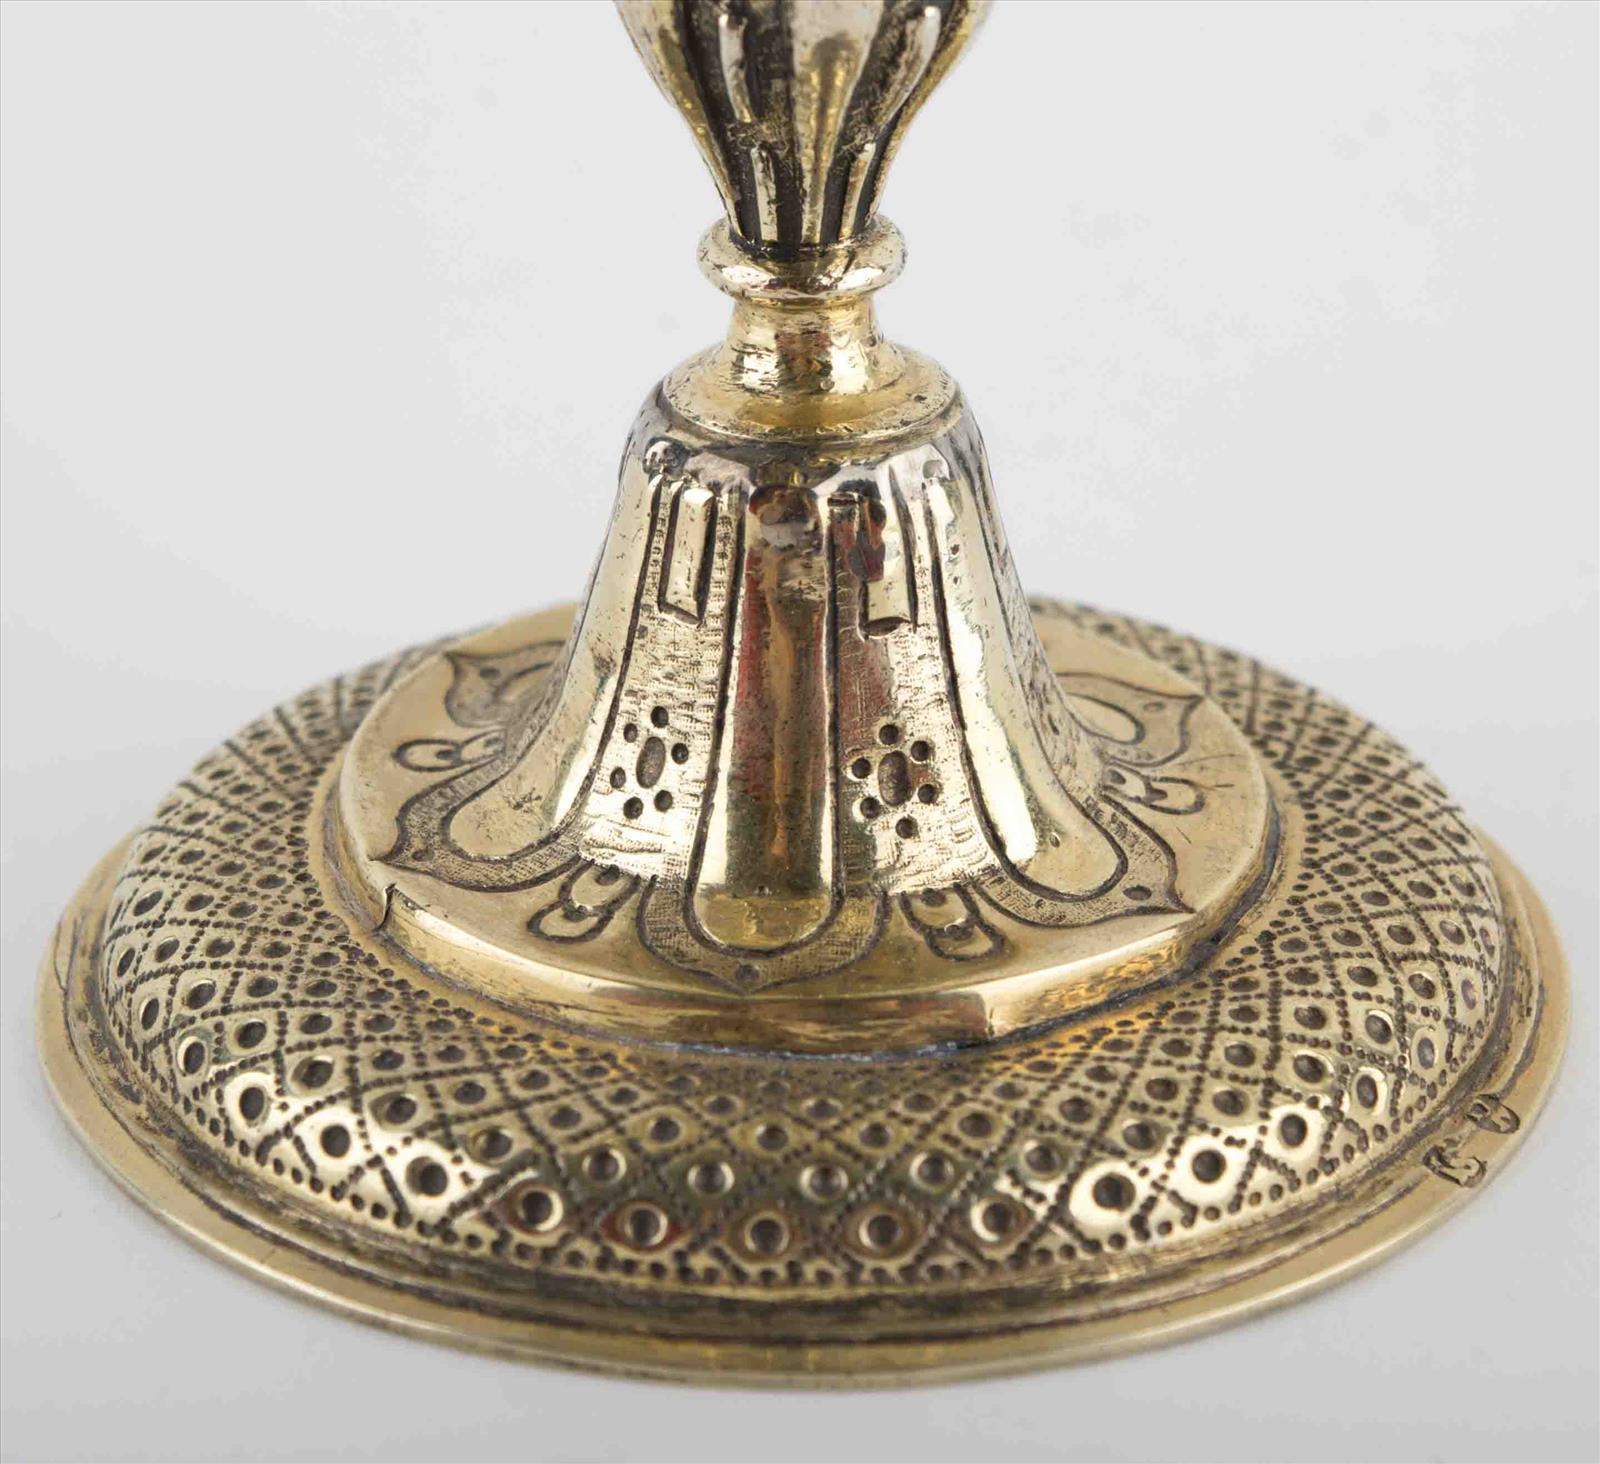 Abendmahlkelch  17. Jhd. / Holy Communion goblet, 17th centurySilber/vergoldet, geprüft, datiert - Image 5 of 5